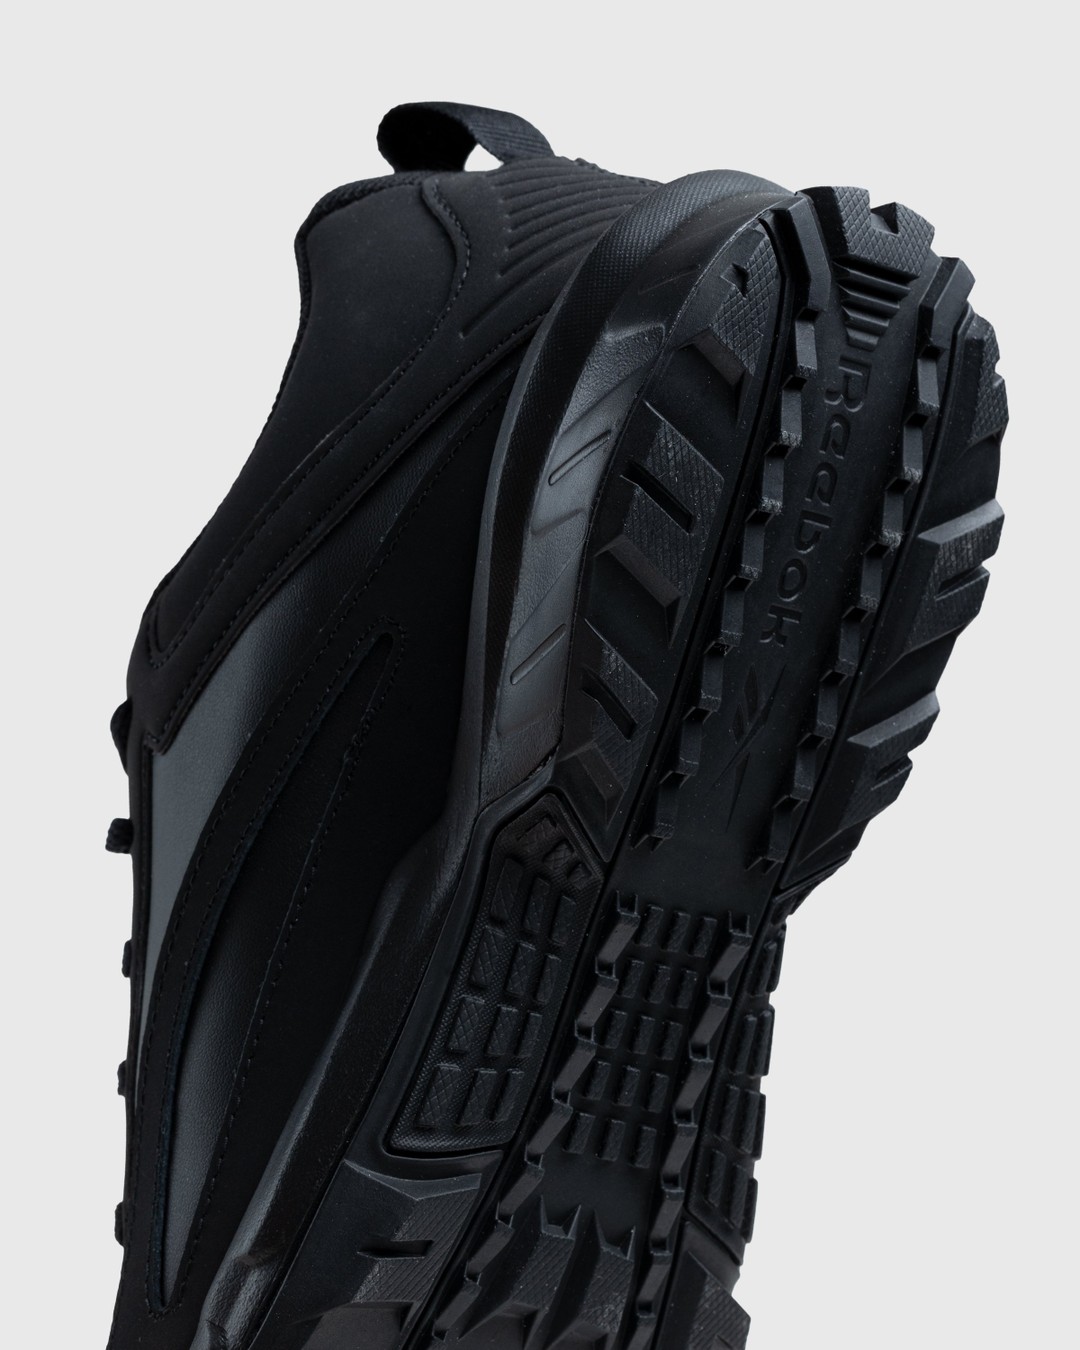 Reebok – Ridgerider 6.0 Leather Black - Low Top Sneakers - Black - Image 6